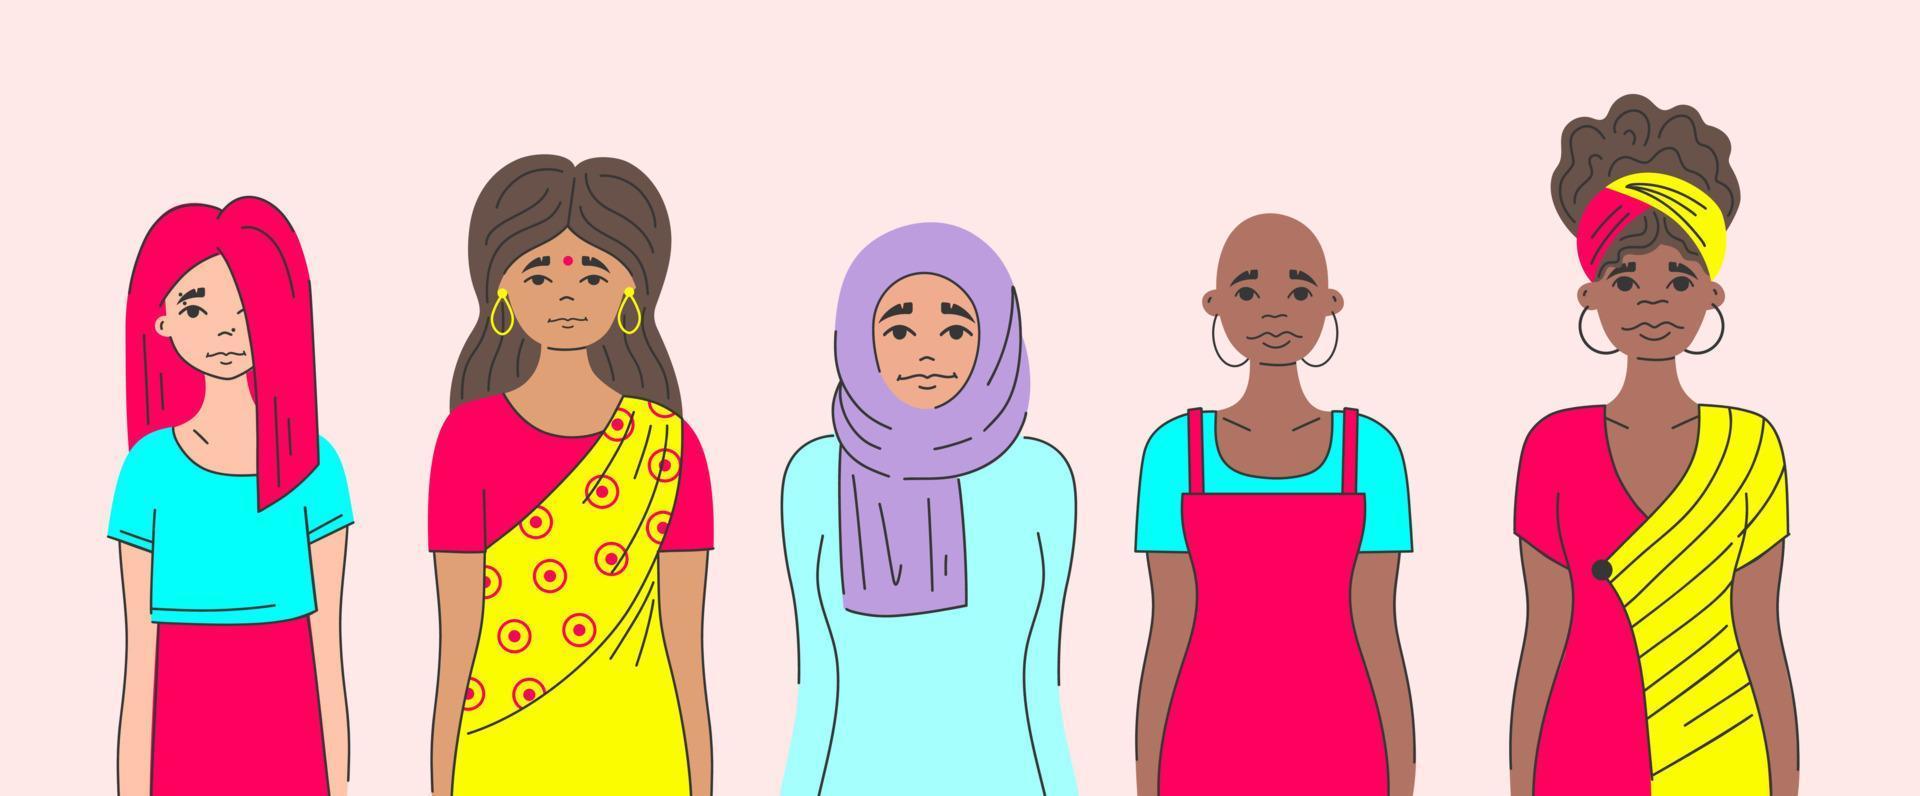 rörelse mot diskriminering ojämlikhet, stereotyper grupp av kvinnor från olika etniska grupper muslimska, indiska, afrikanska, informella. bryta partiskheten. allierad kvinna feminism. internationella kvinnodagen. vektor